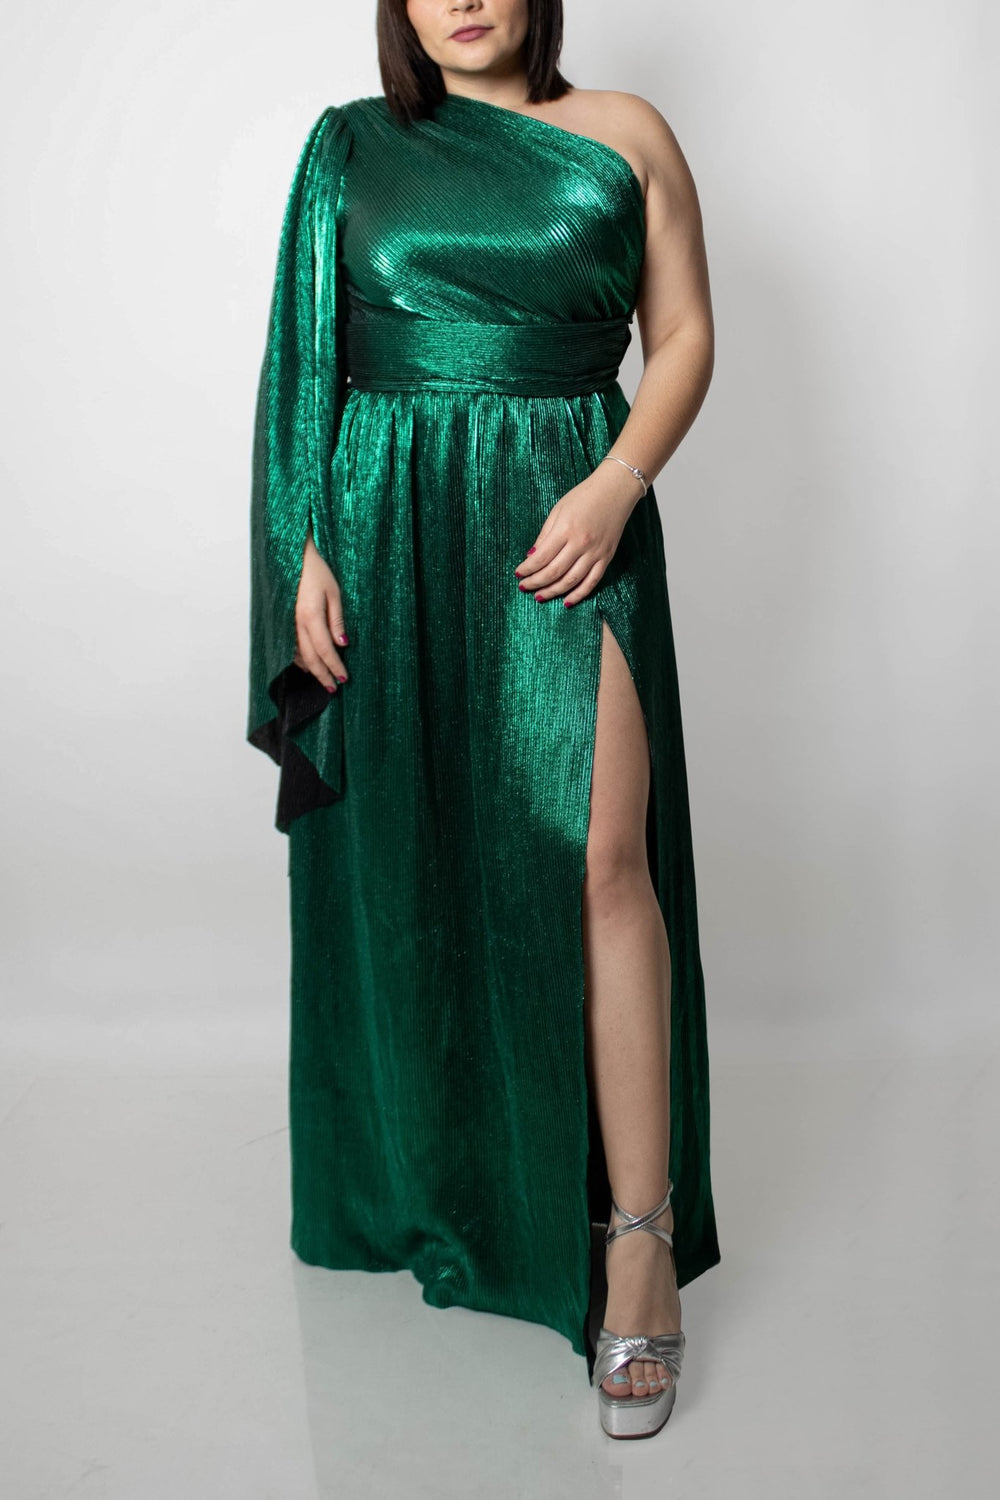 Litha - verde - Lend the Trend renta de vestidos mexico